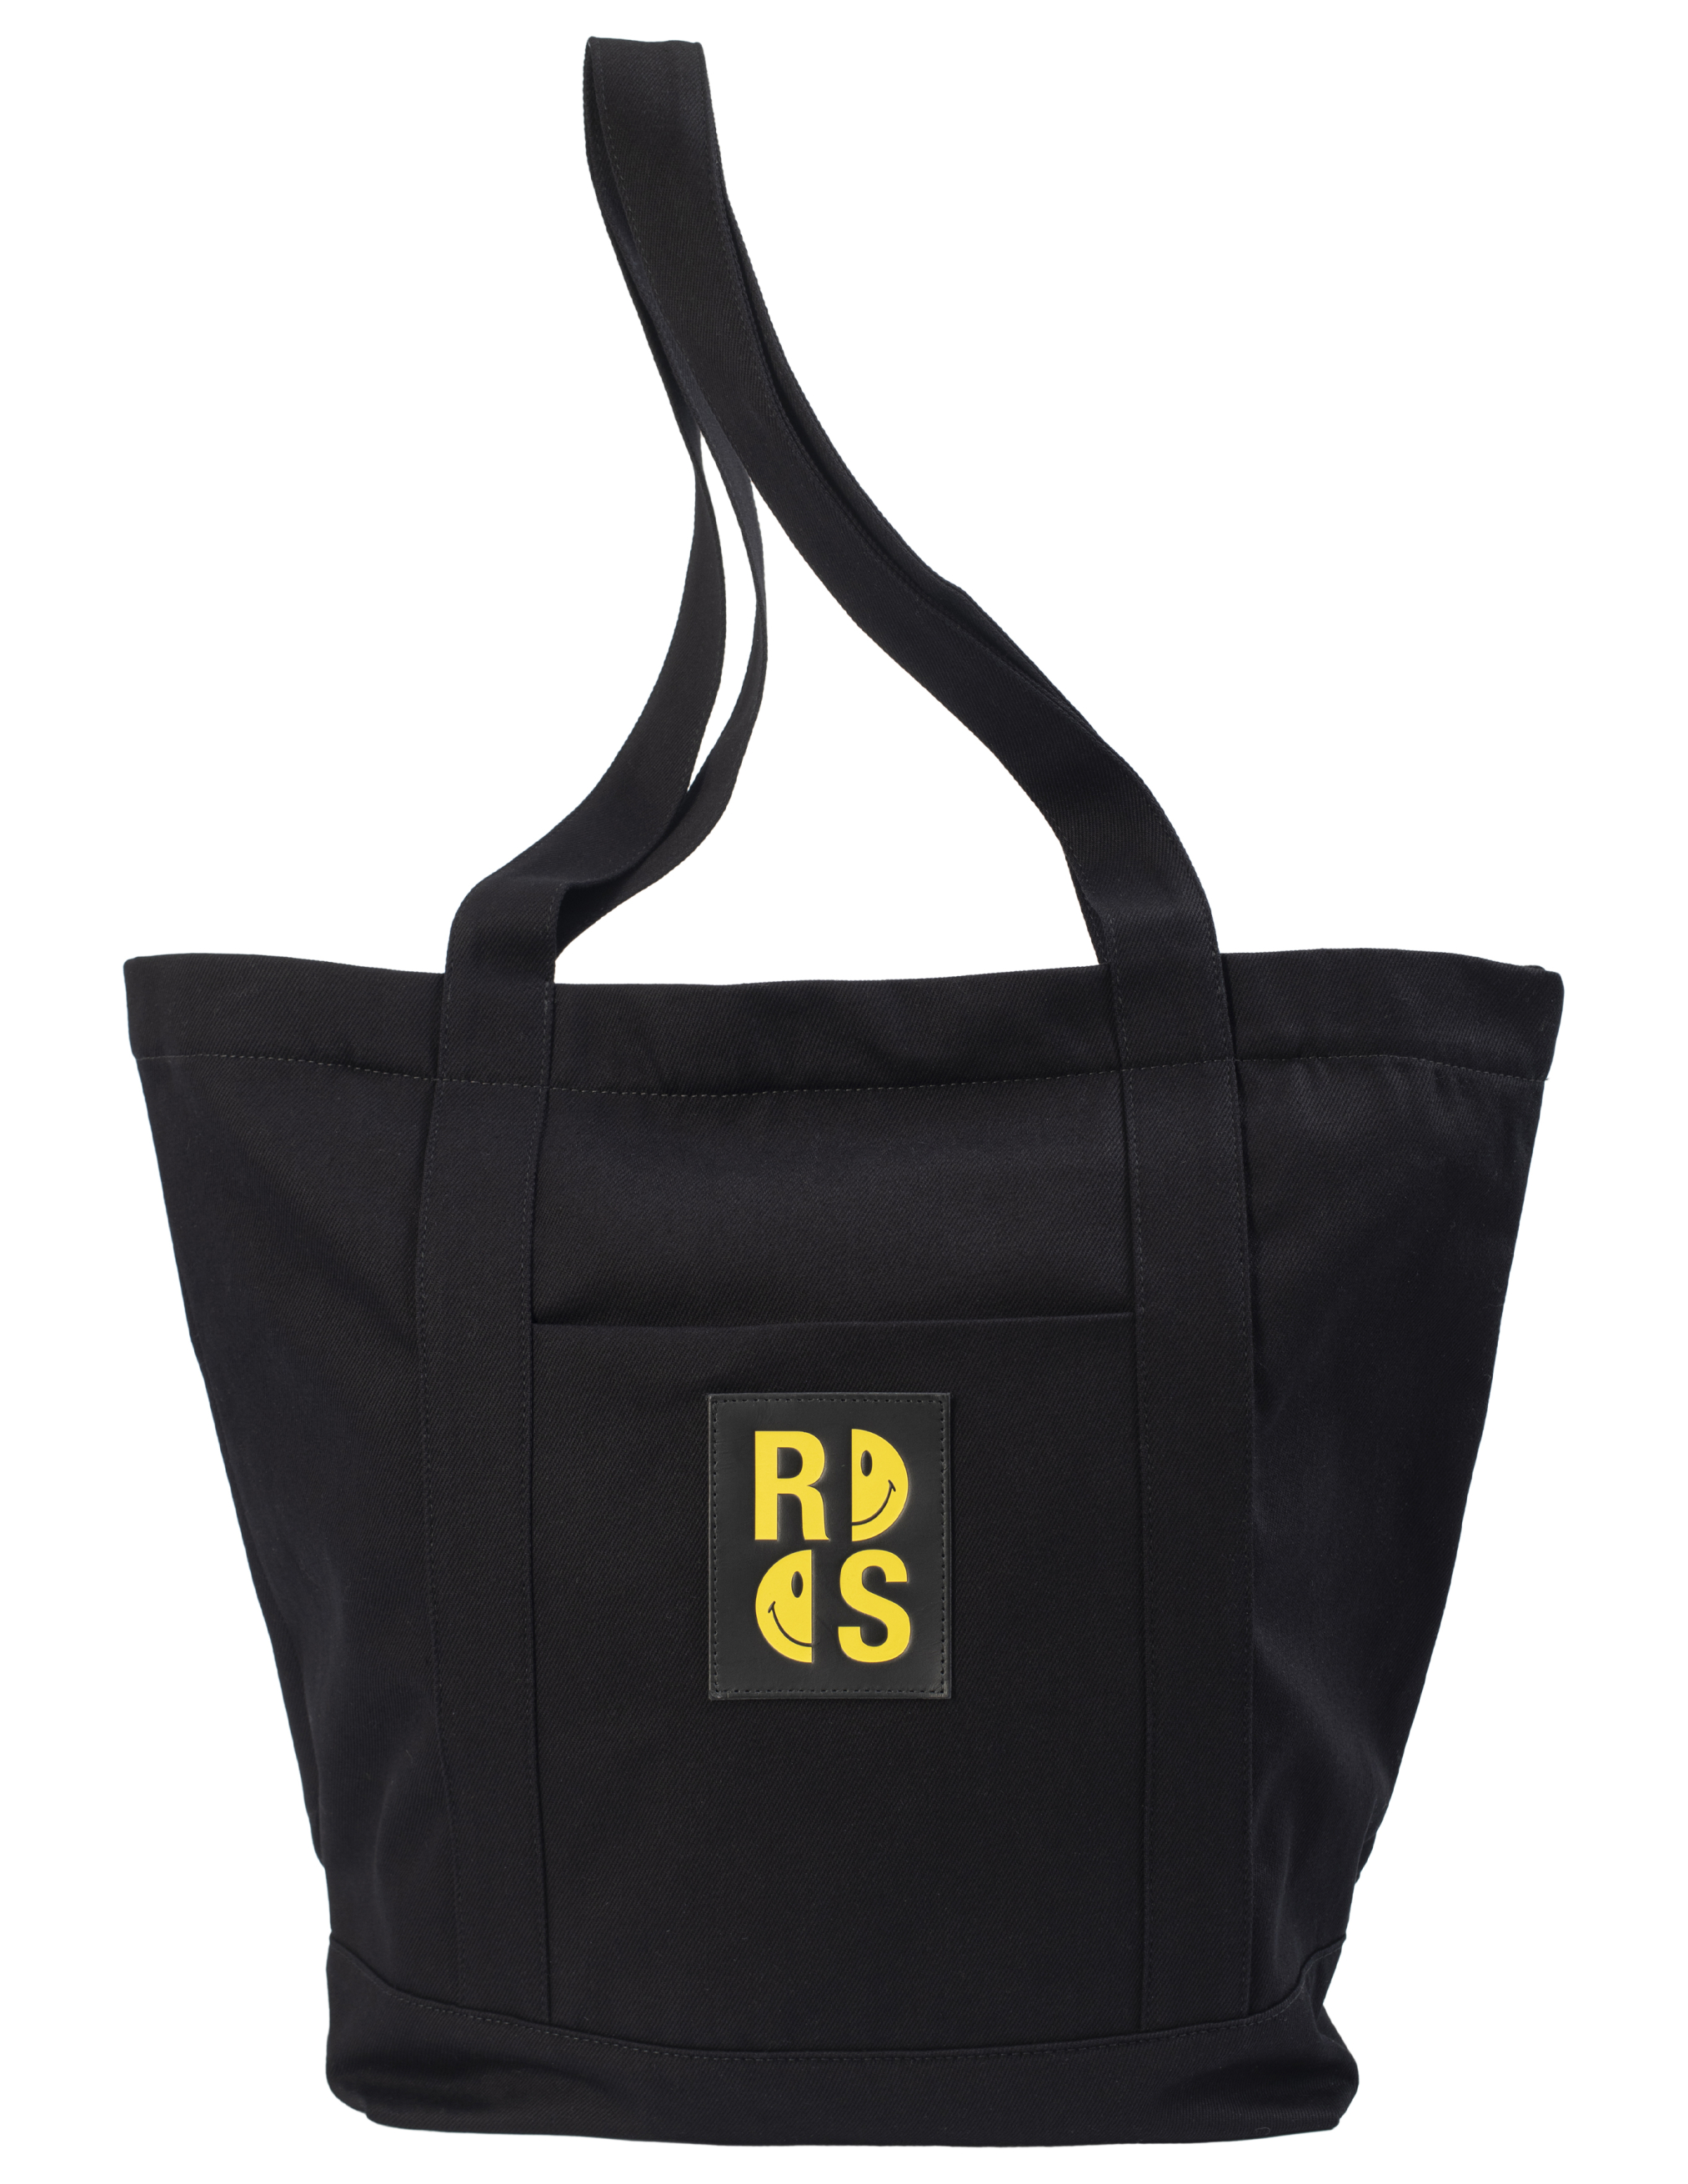 Джинсовая сумка-шоппер Raf Simons x Smiley с патчем